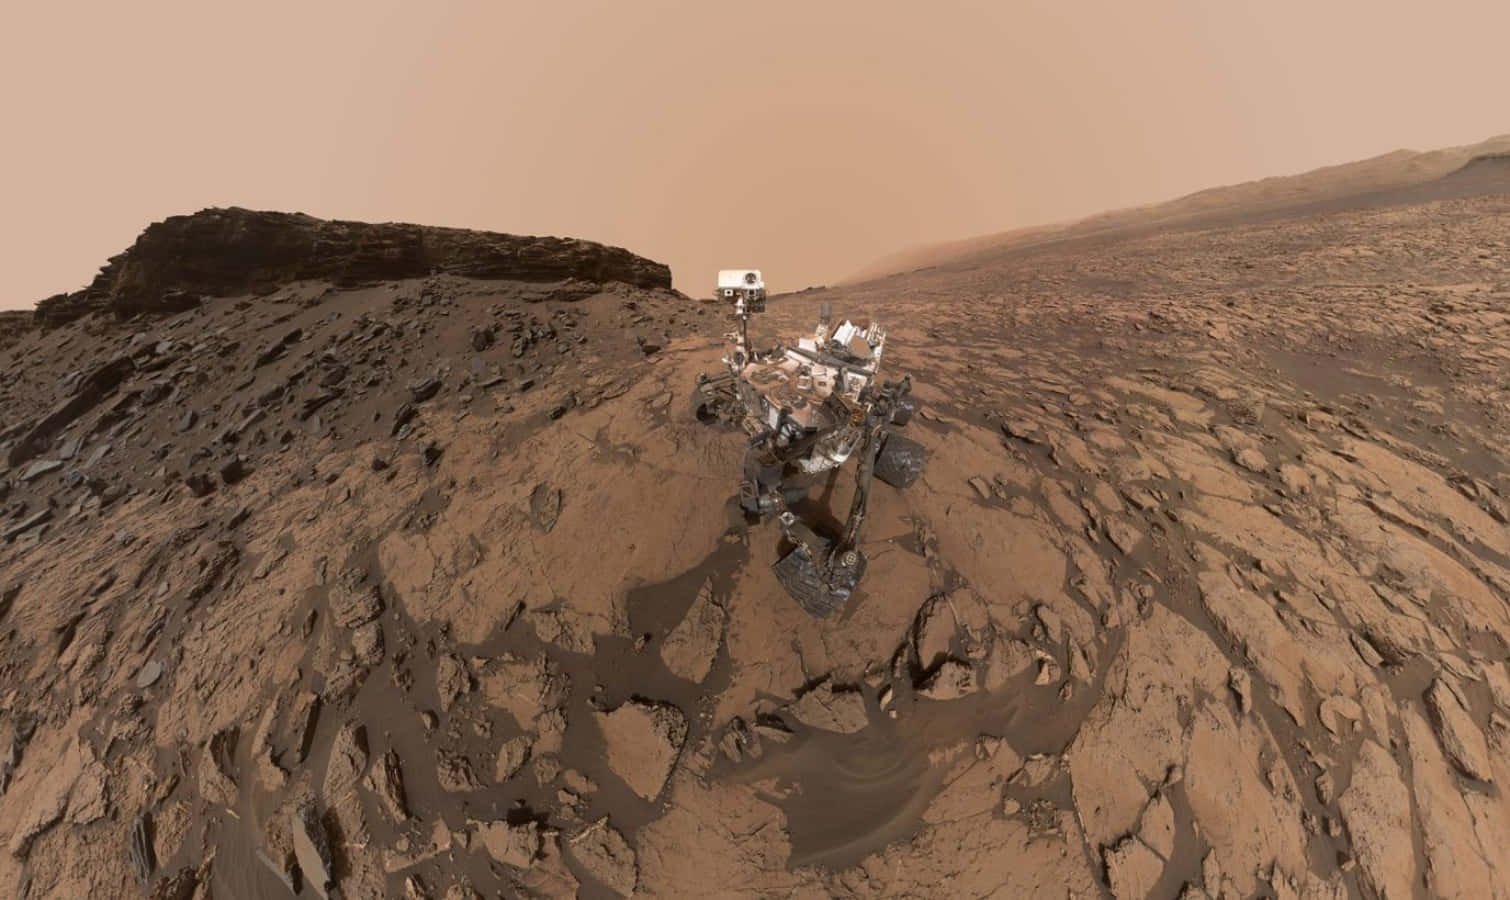 Unrover Su Marte Sta Percorrendo Un Sentiero Di Terra